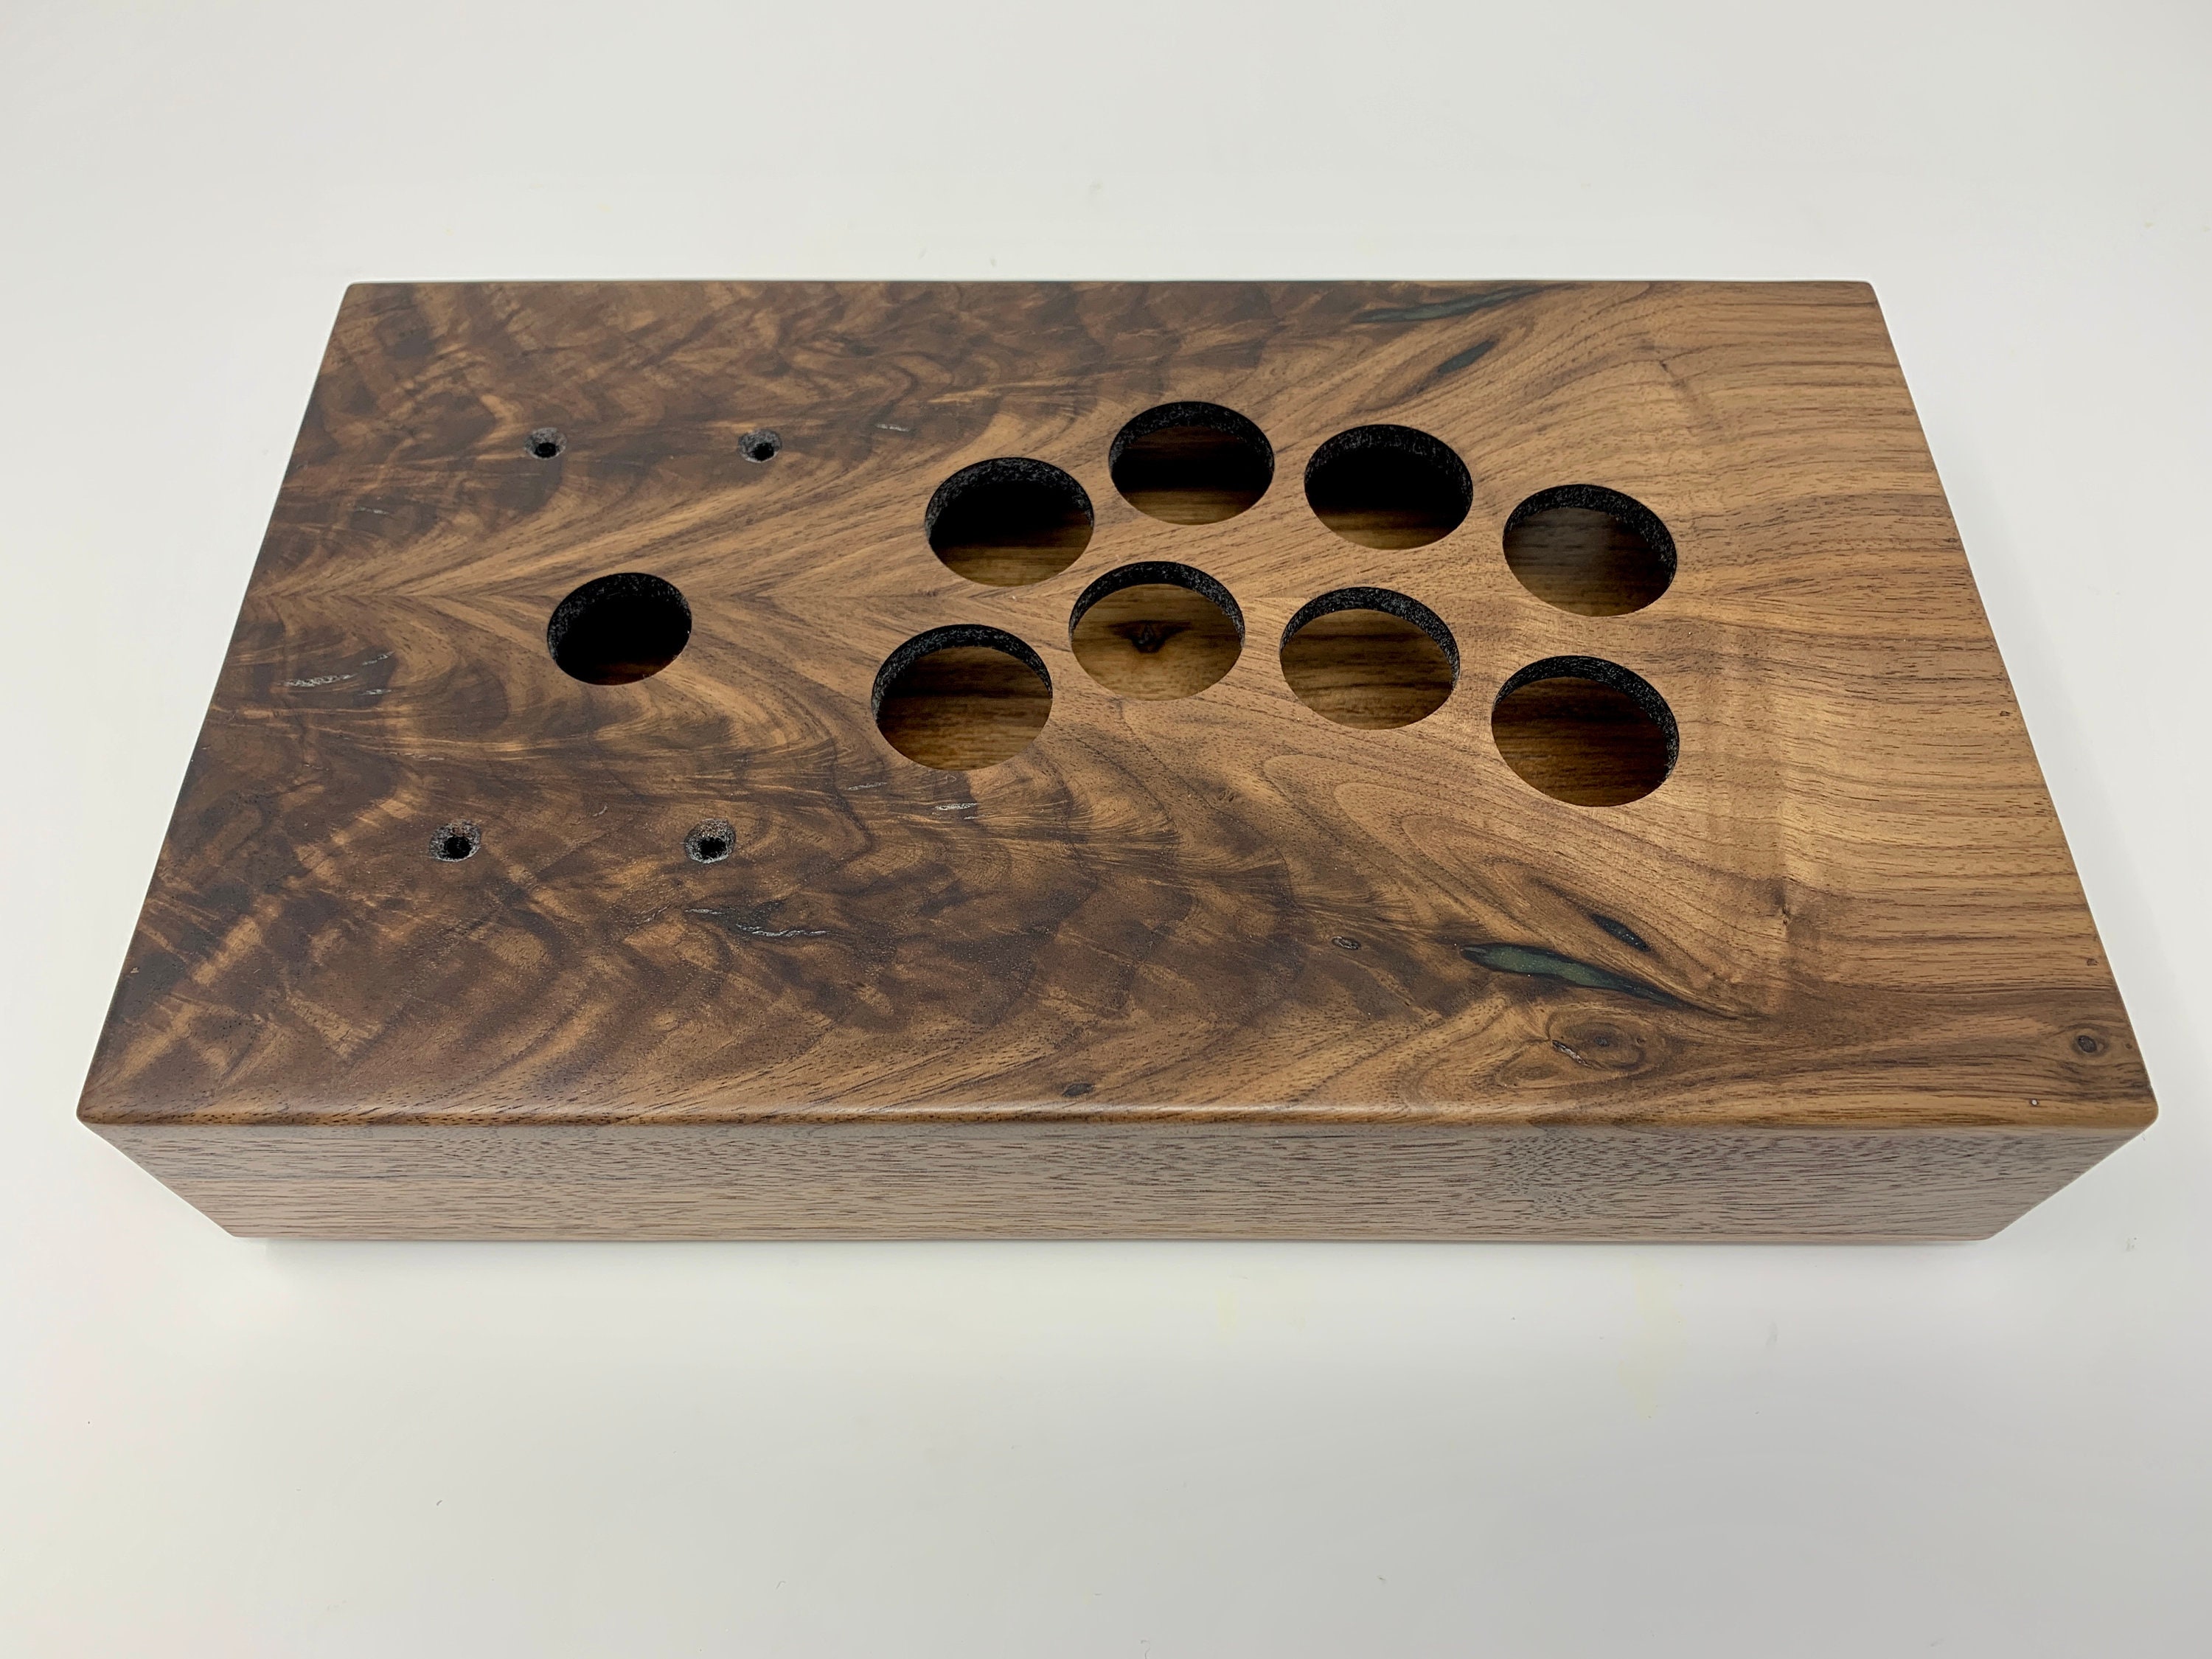 Vault 2 V1.1 23.4 L Wooden Mini-itx PC Case -  UK